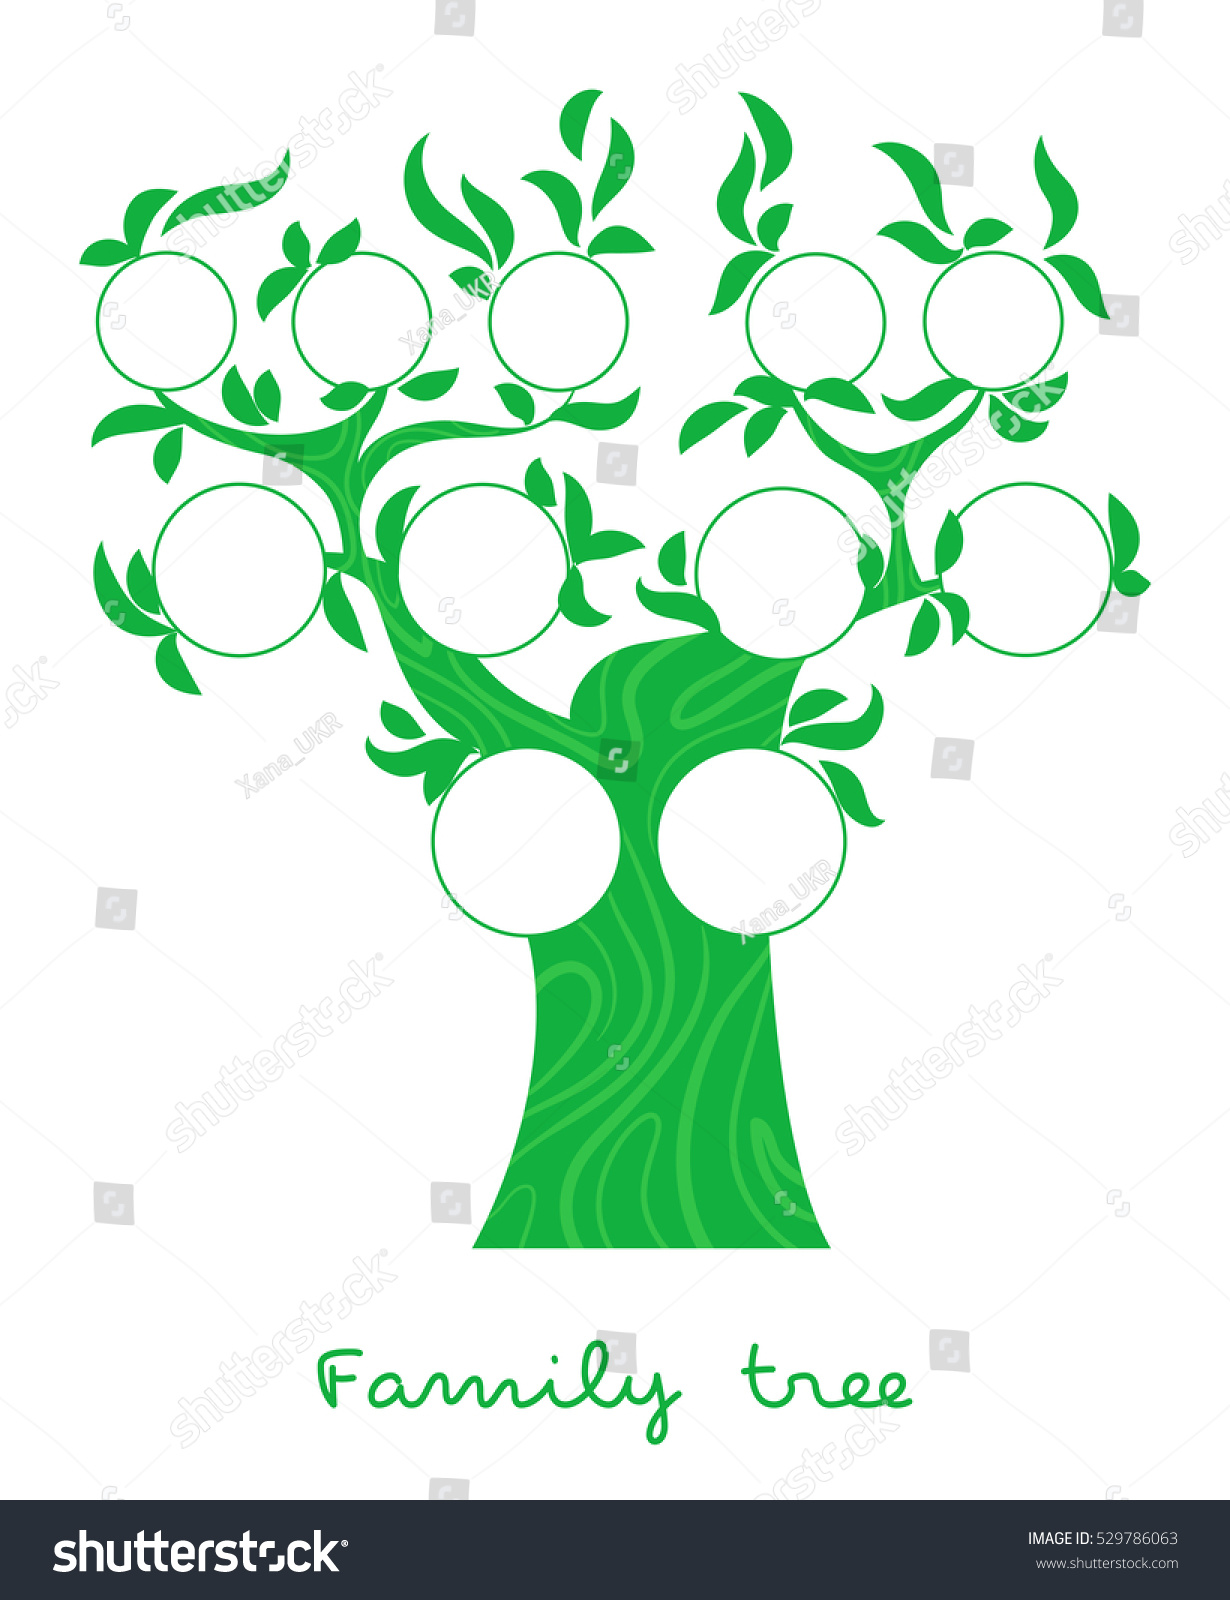 family-tree-chart-genealogical-tree-forfamily-stock-vector-royalty